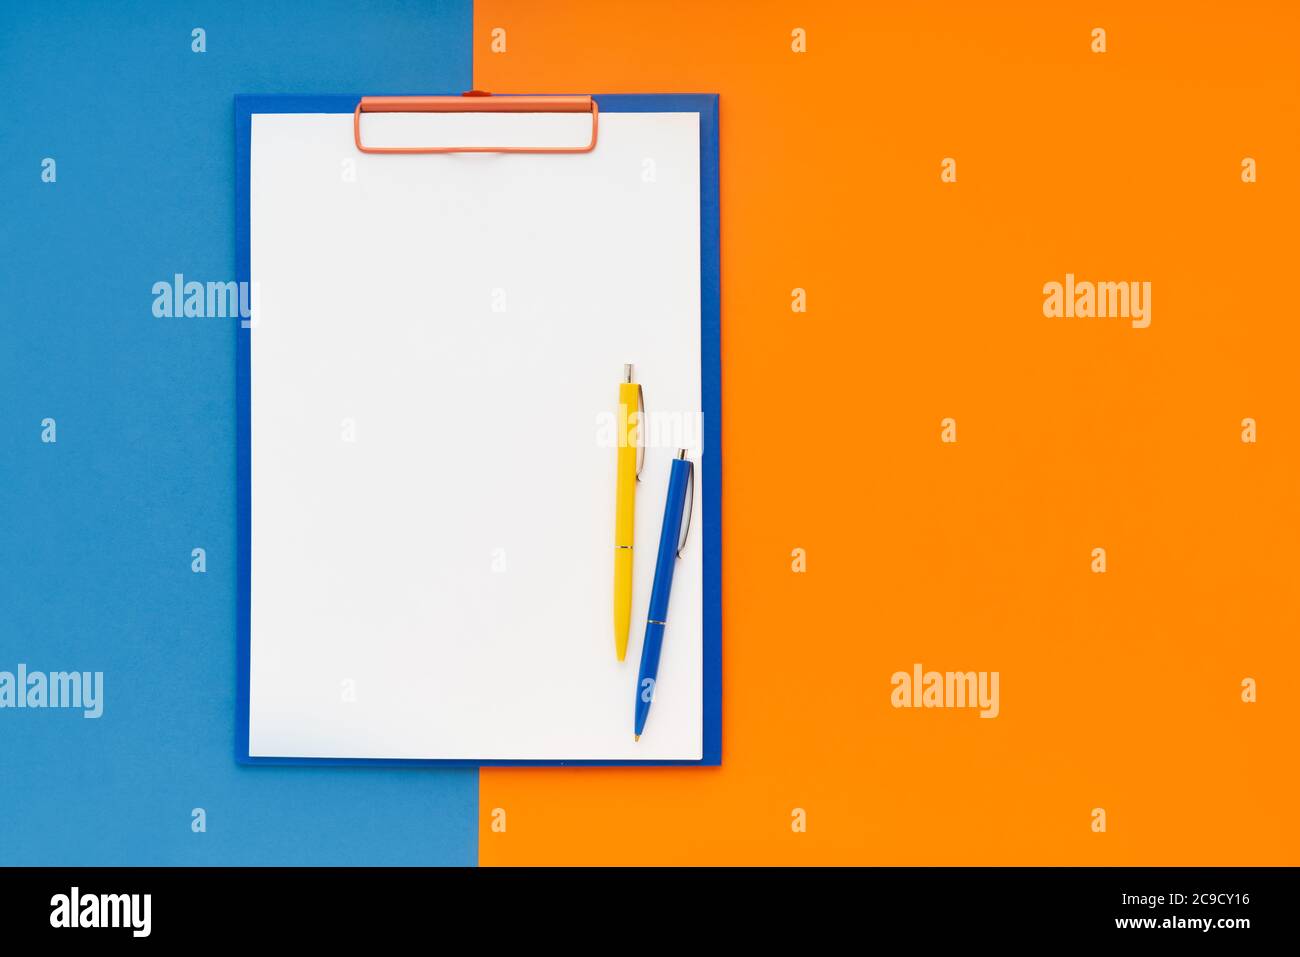 Leeres Clipboard-Mockup und zwei Stifte auf blau-orangefarbenem Hintergrund. Draufsicht, Kopierbereich für Text. Zurück zur Schule, Deadline, Morgenkonzept. Stockfoto